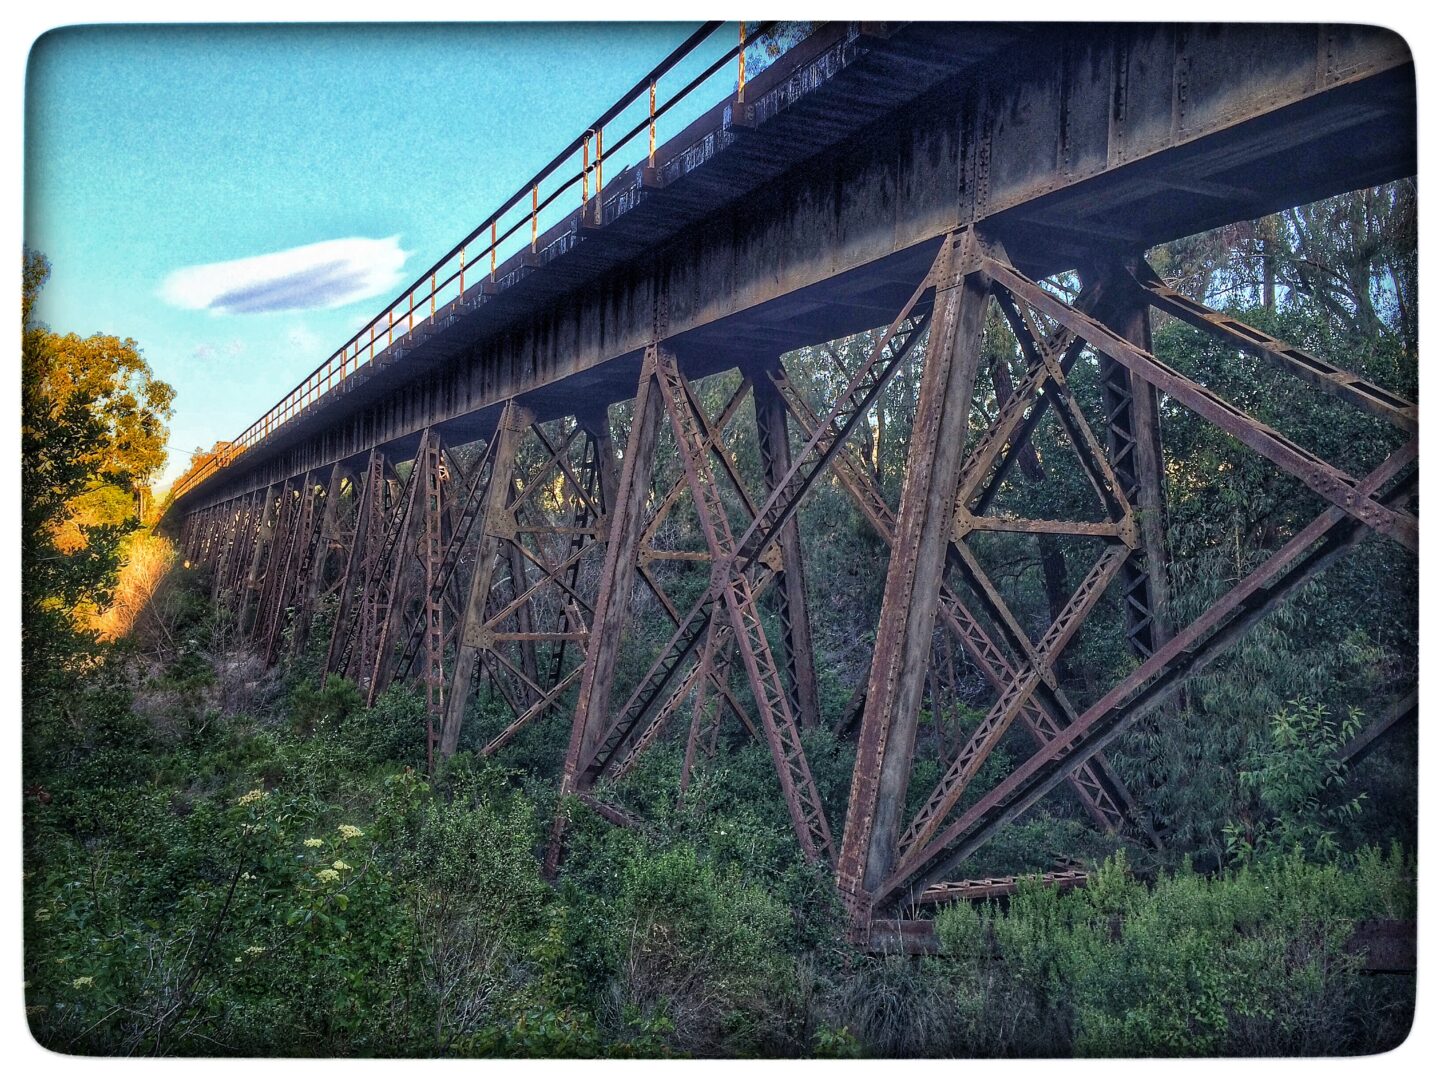 A train bridge over a river.